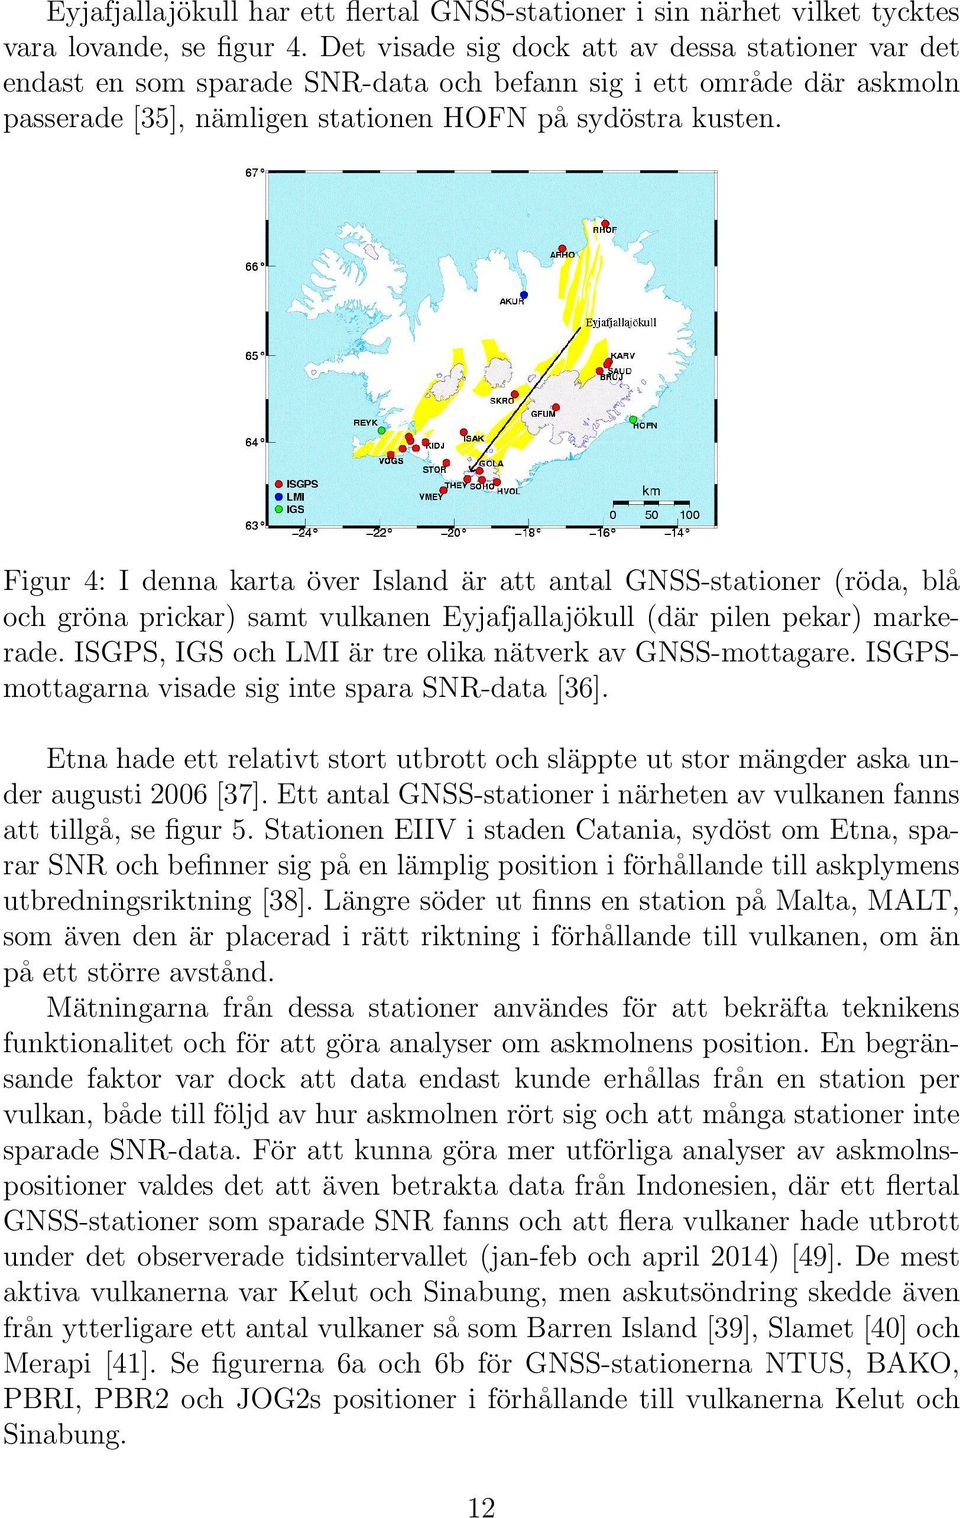 Figur 4: I denna karta över Island är att antal GNSS-stationer (röda, blå och gröna prickar) samt vulkanen Eyjafjallajökull (där pilen pekar) markerade.